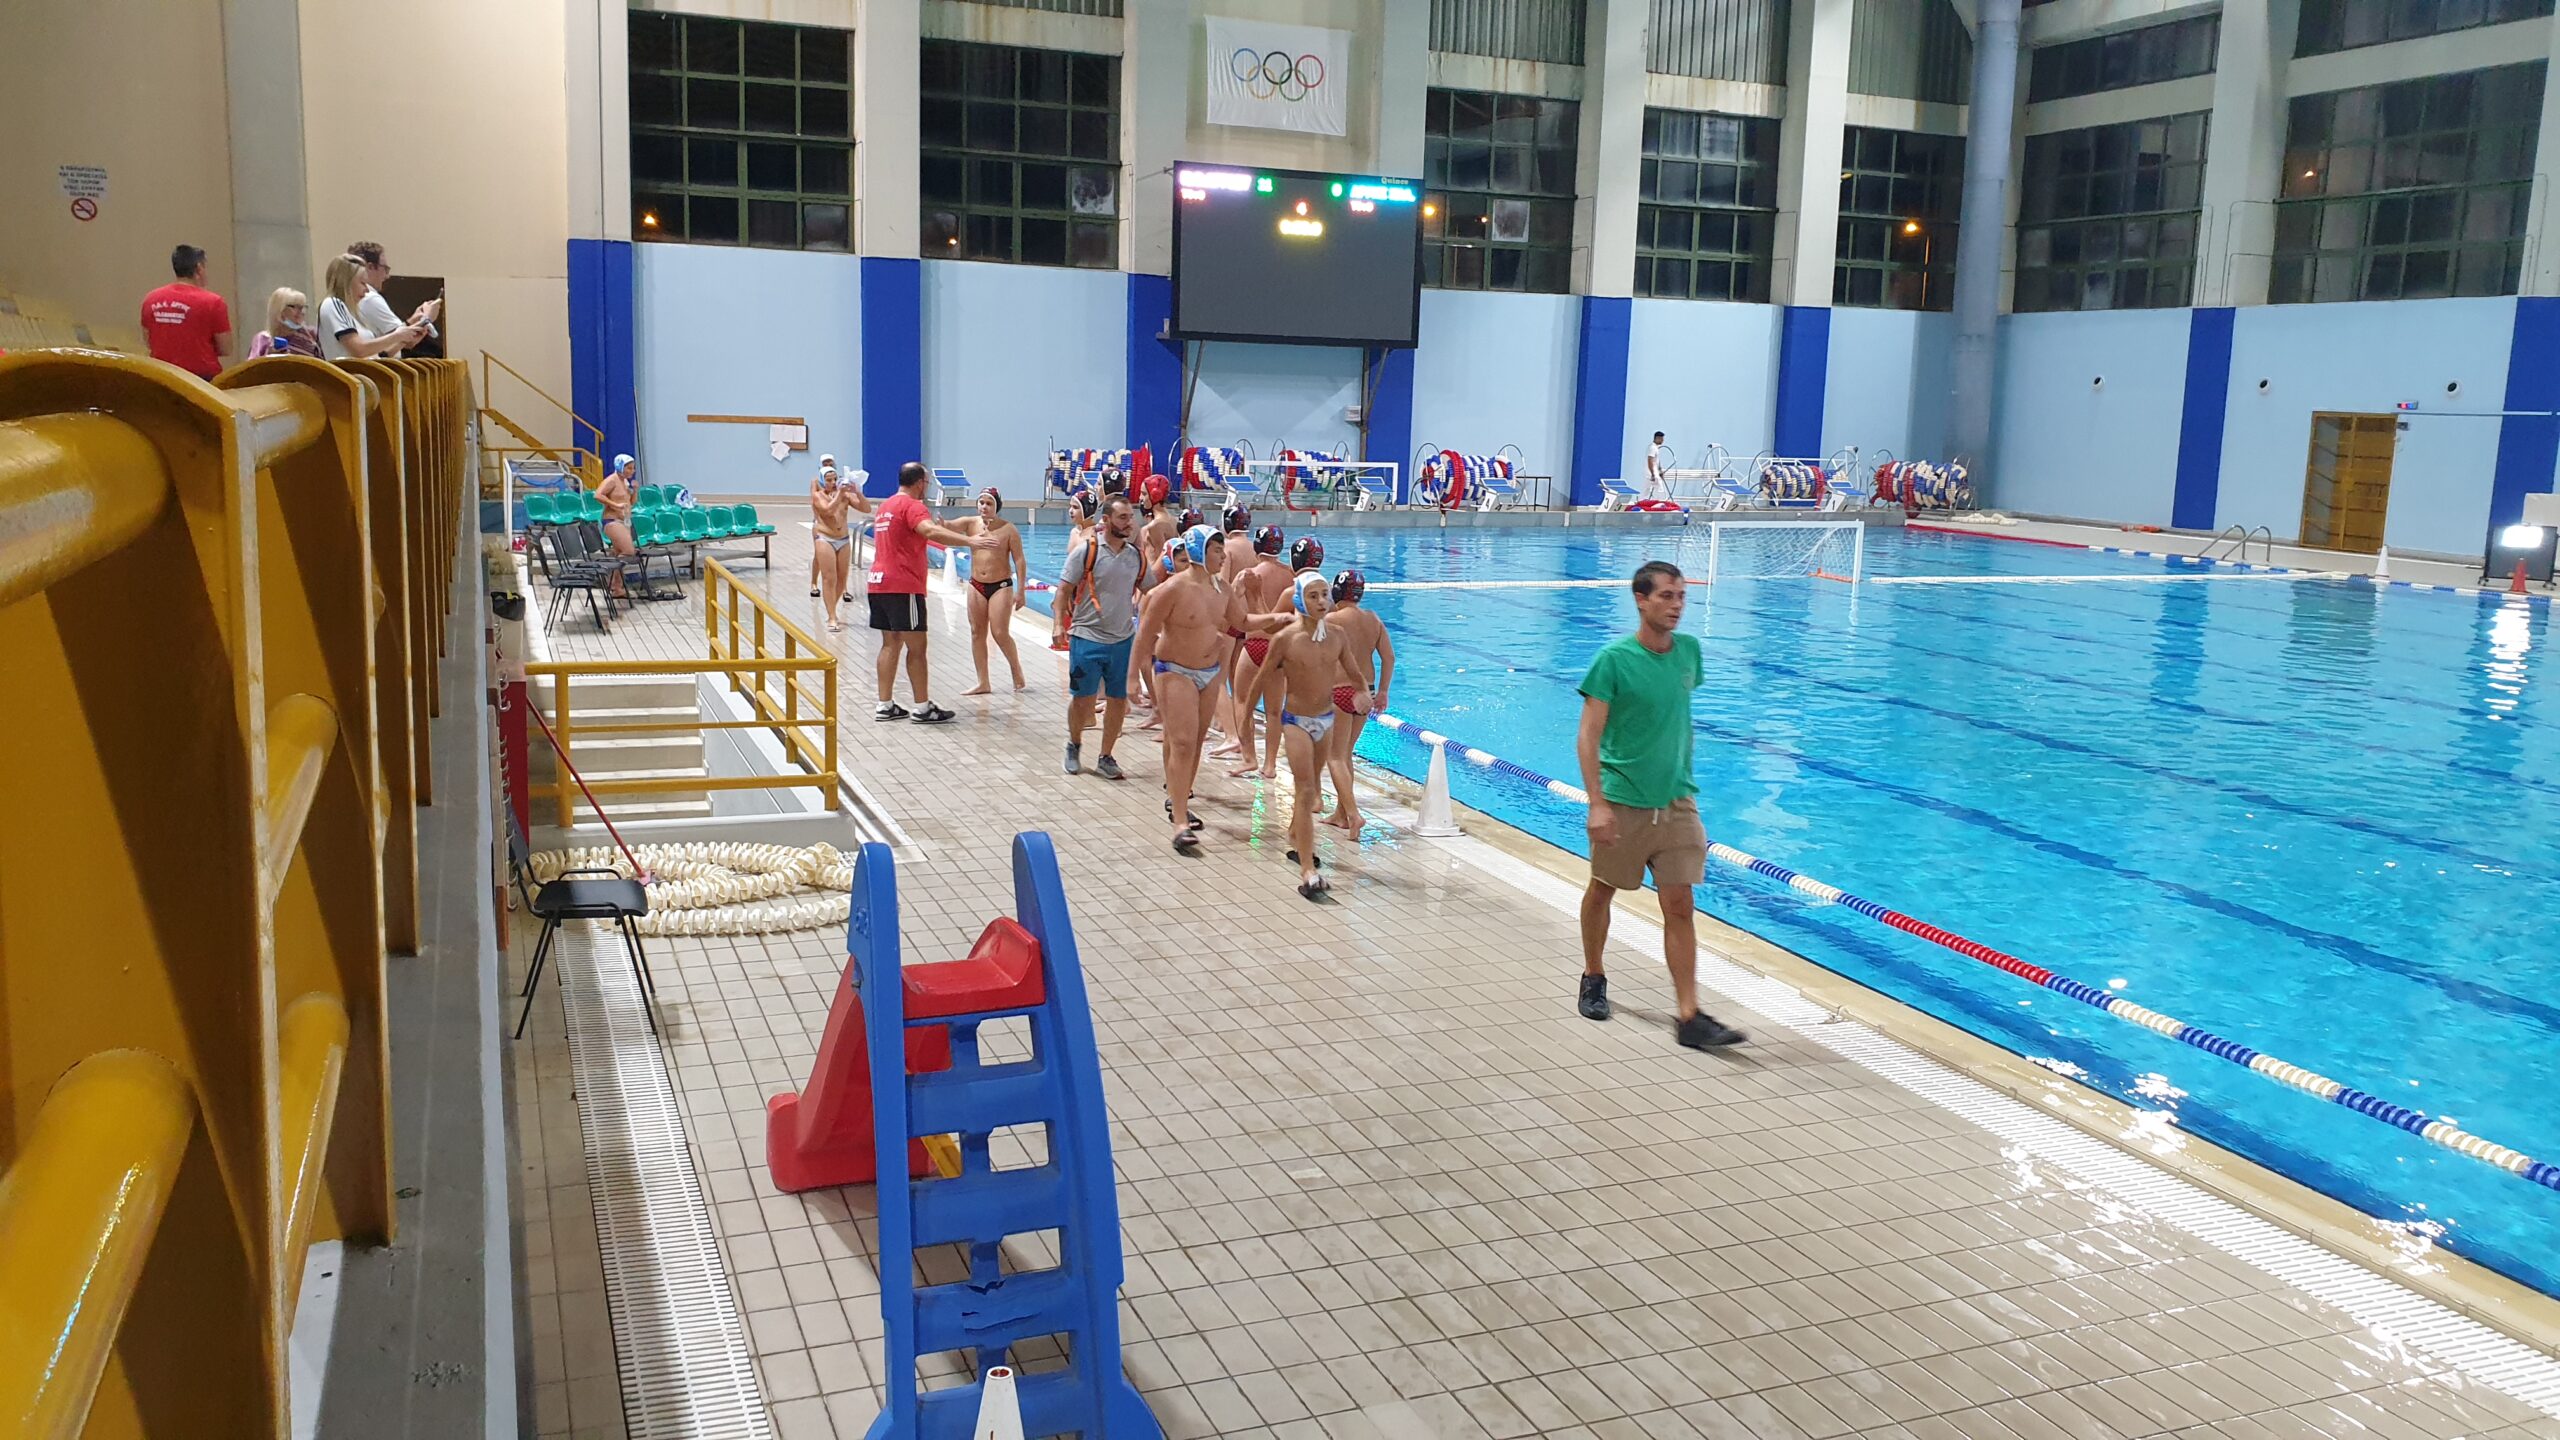 ΝΟΑ: Οι Μίνι Παίδες ολοκλήρωσαν την παρουσία τους στο πανελλήνιο πρωτάθλημα υδατοσφαίρισης